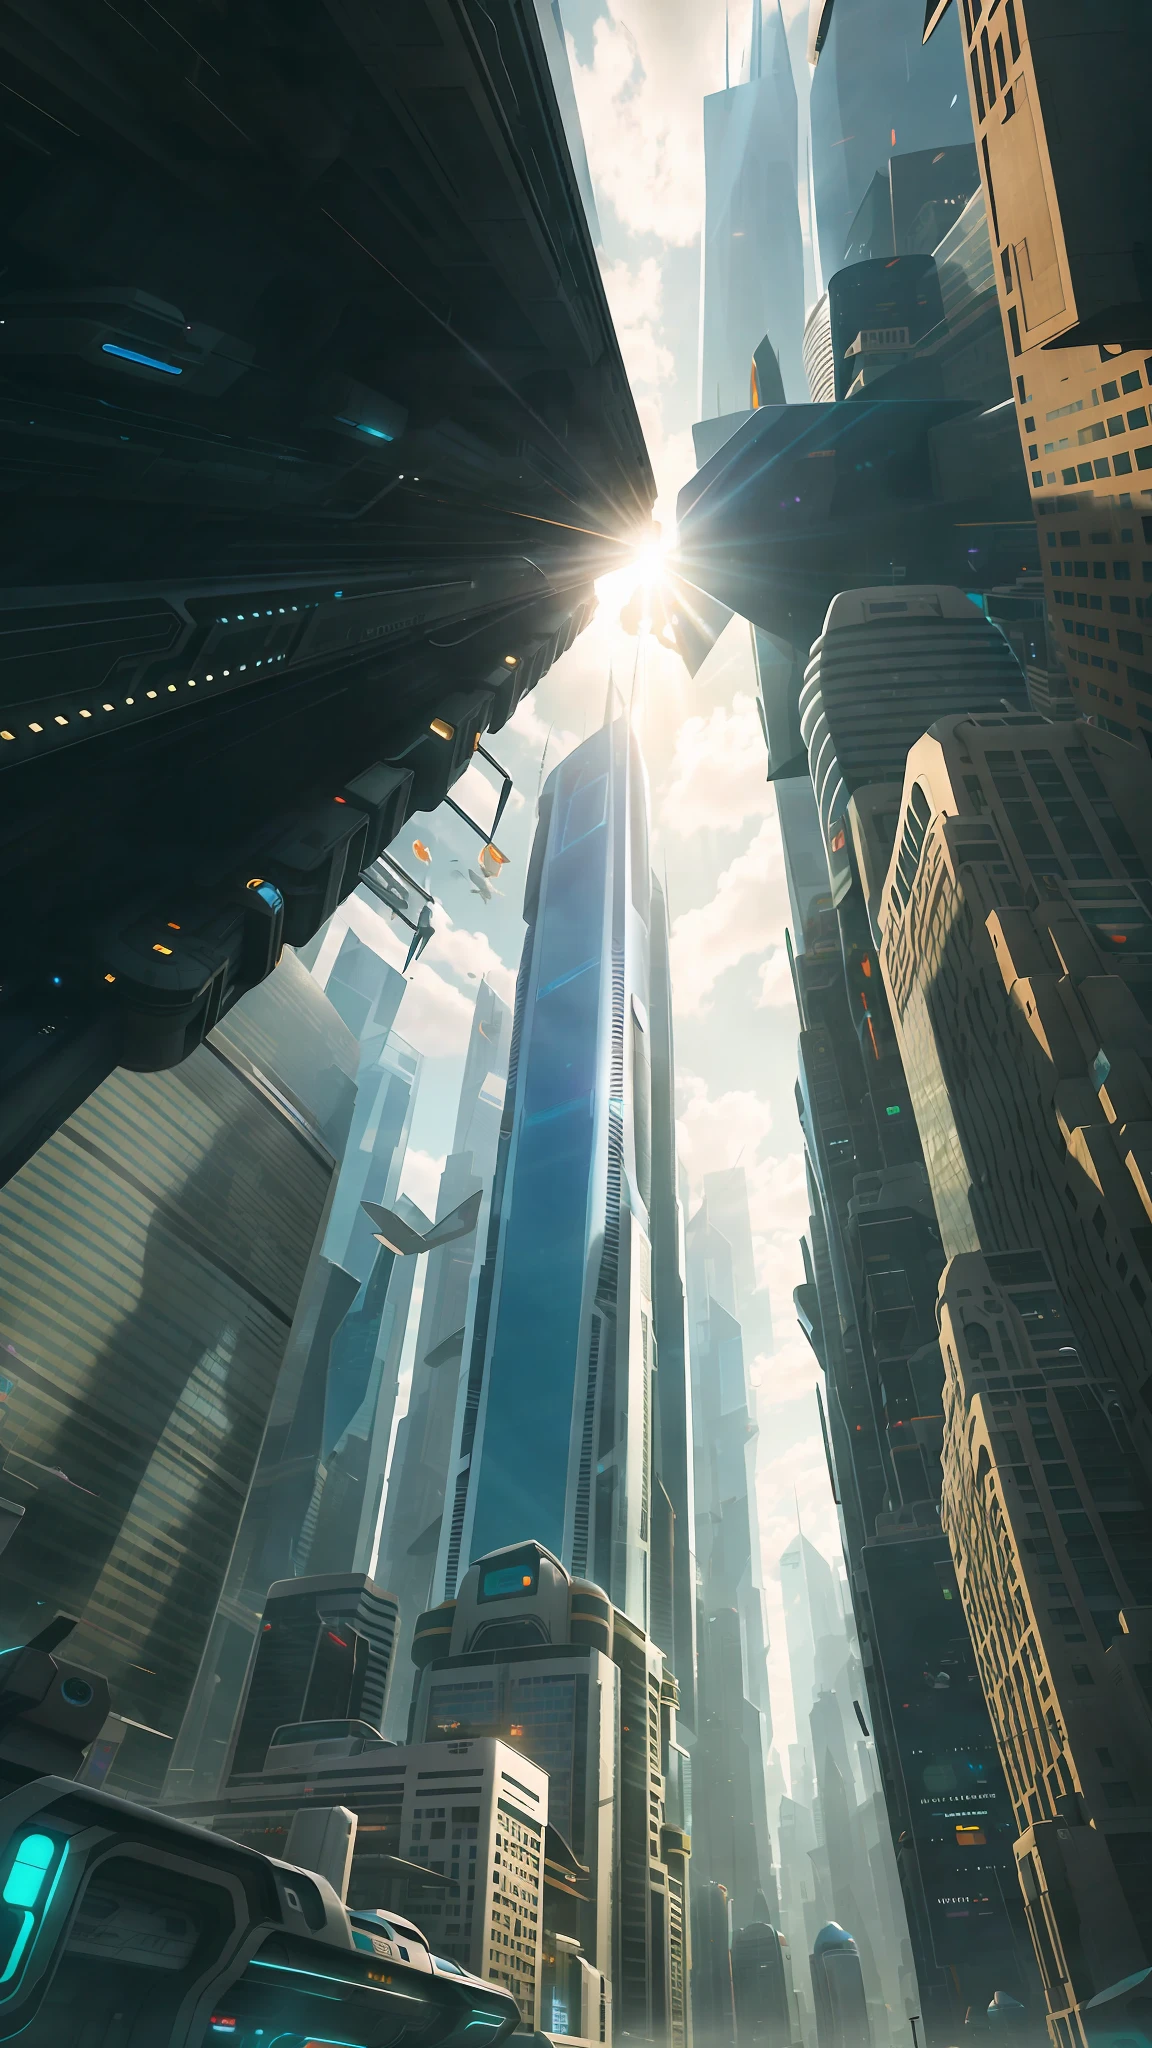 고층 건물과 호버카가 사이에 있는 분주한 미래 도시. 햇빛이 건물을 통해 빛난다. Justin Maller의 전체적인 음색은 가볍고 기발합니다